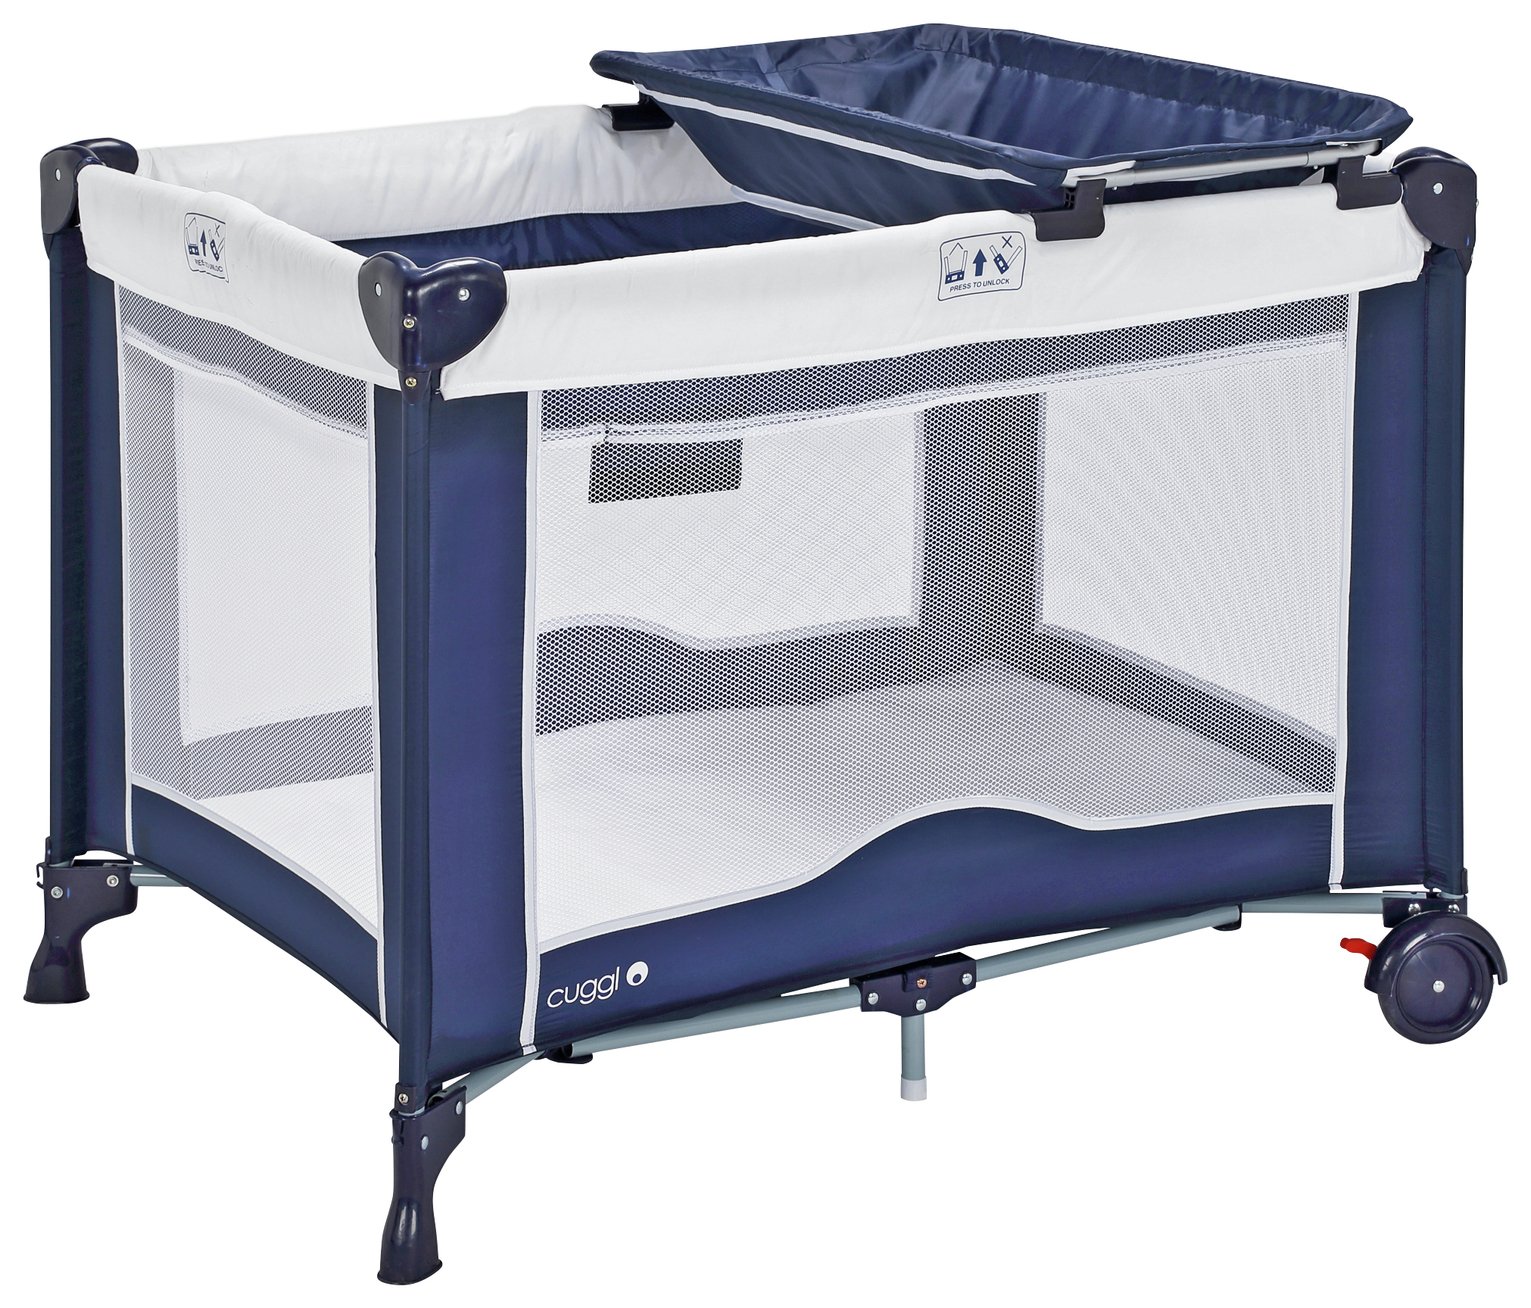 standard travel cot mattress size